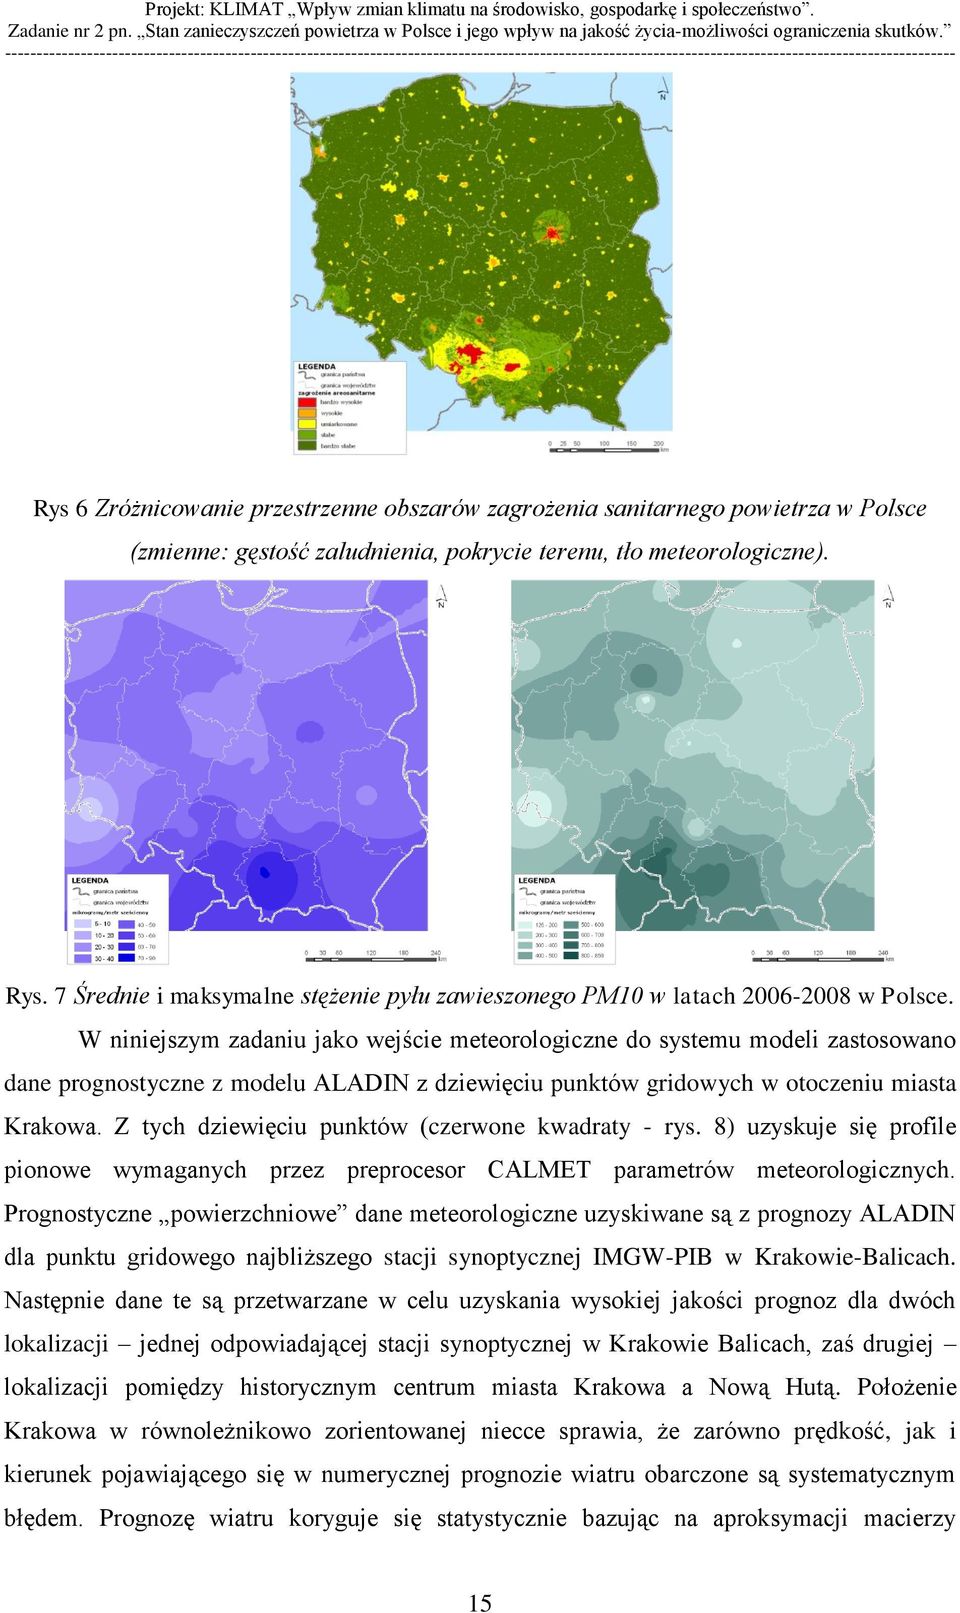 W niniejszym zadaniu jako wejście meteorologiczne do systemu modeli zastosowano dane prognostyczne z modelu ALADIN z dziewięciu punktów gridowych w otoczeniu miasta Krakowa.